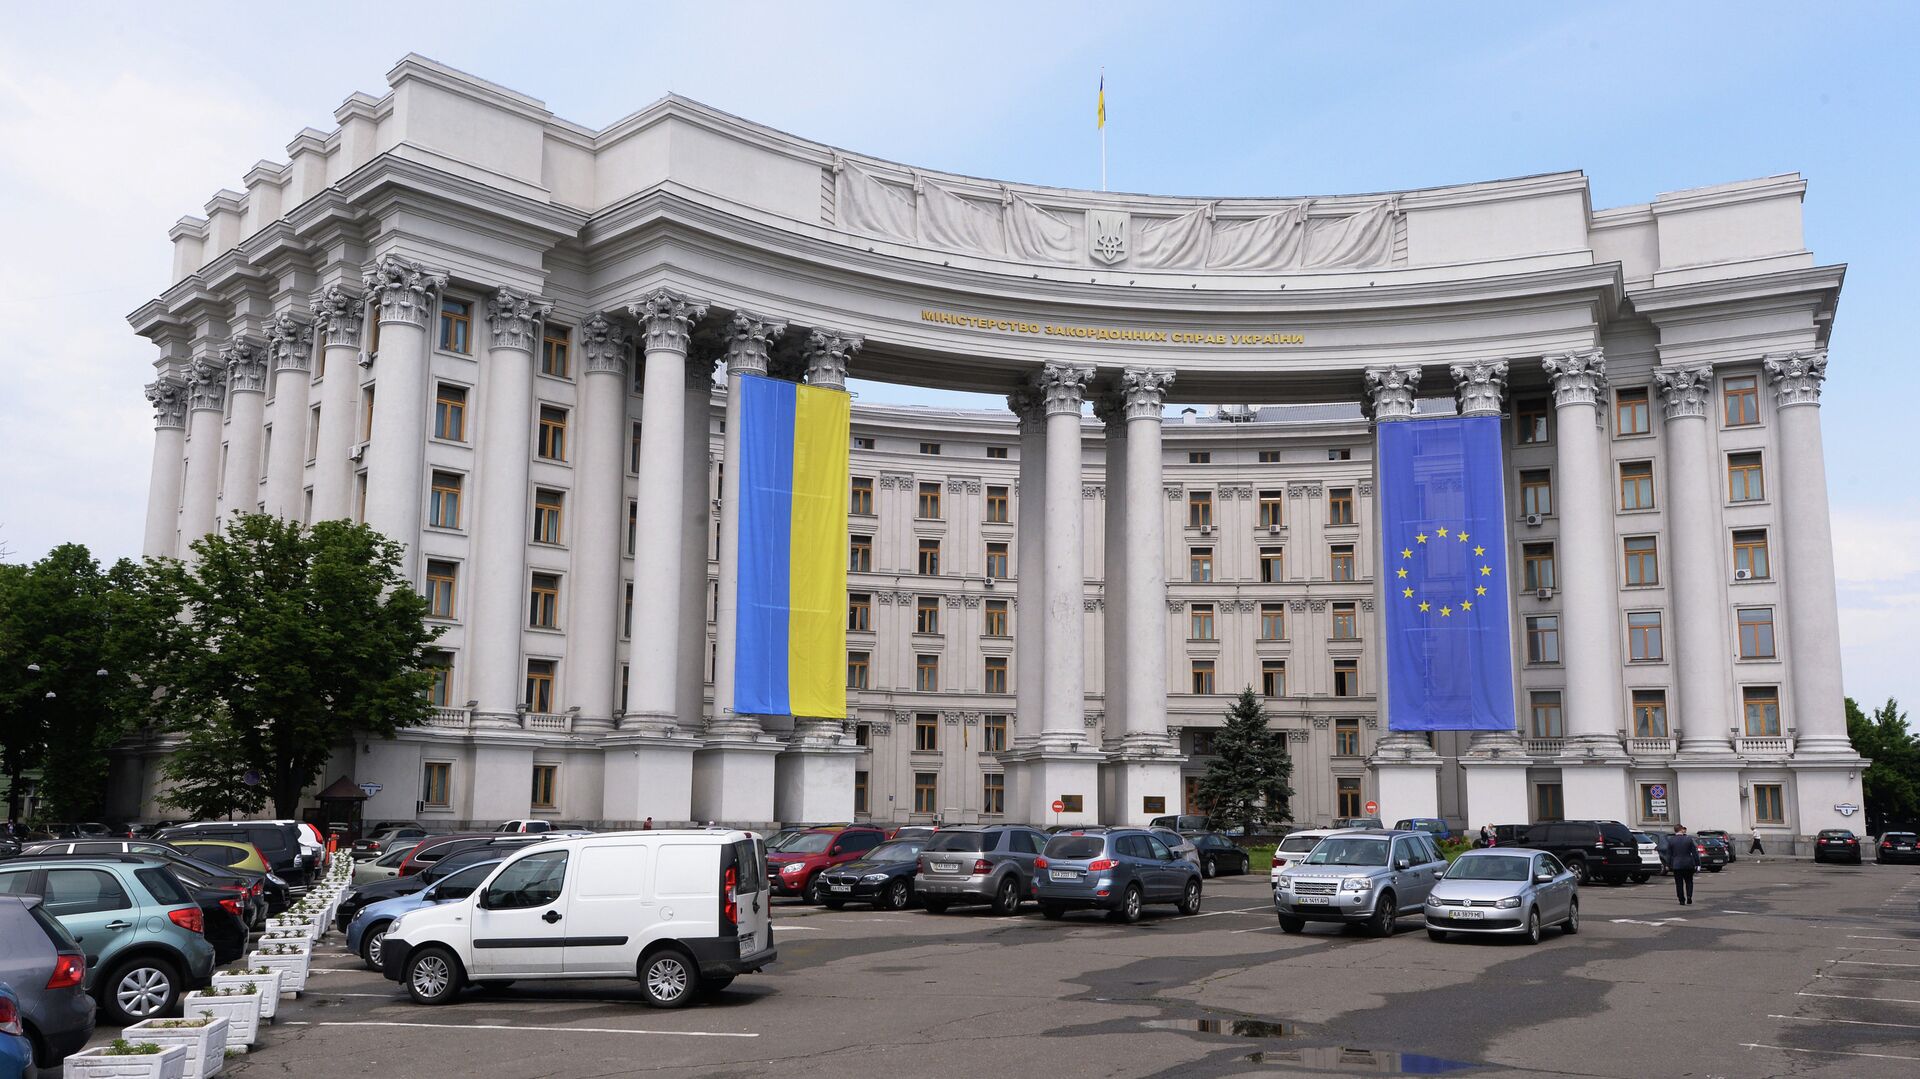 Здание МИДа Украины с национальным флагом Украины и флагом Евросоюза на фасаде - РИА Новости, 1920, 01.08.2020